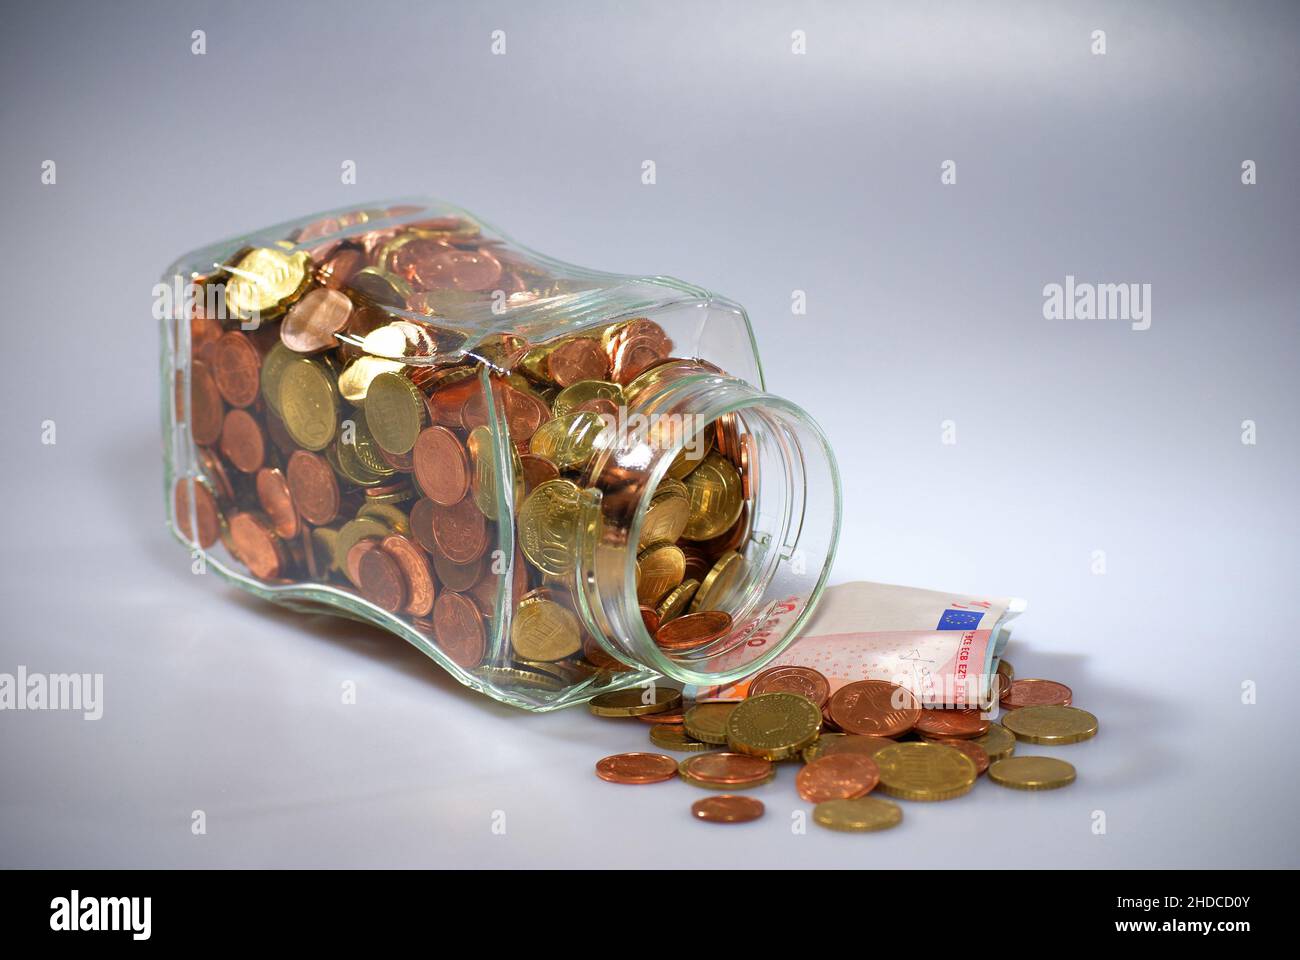 Euromuenzen im Glas, Geldscheine, Altersvorsorge, Notgroschen, Stock Photo